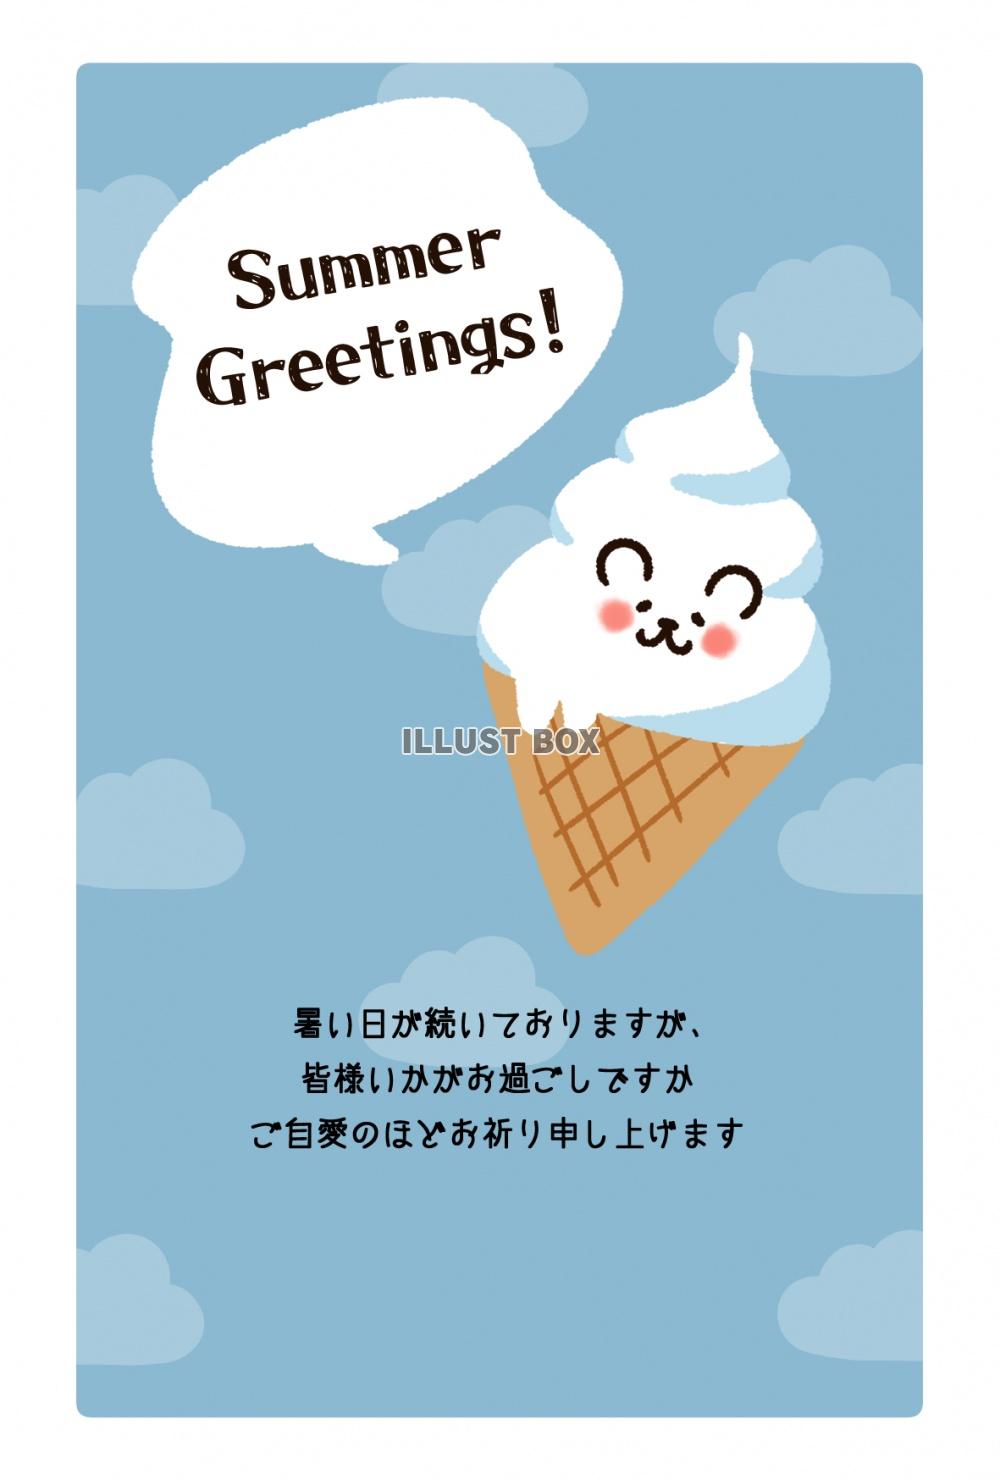 シロクマのソフトクリームの暑中見舞いはがき